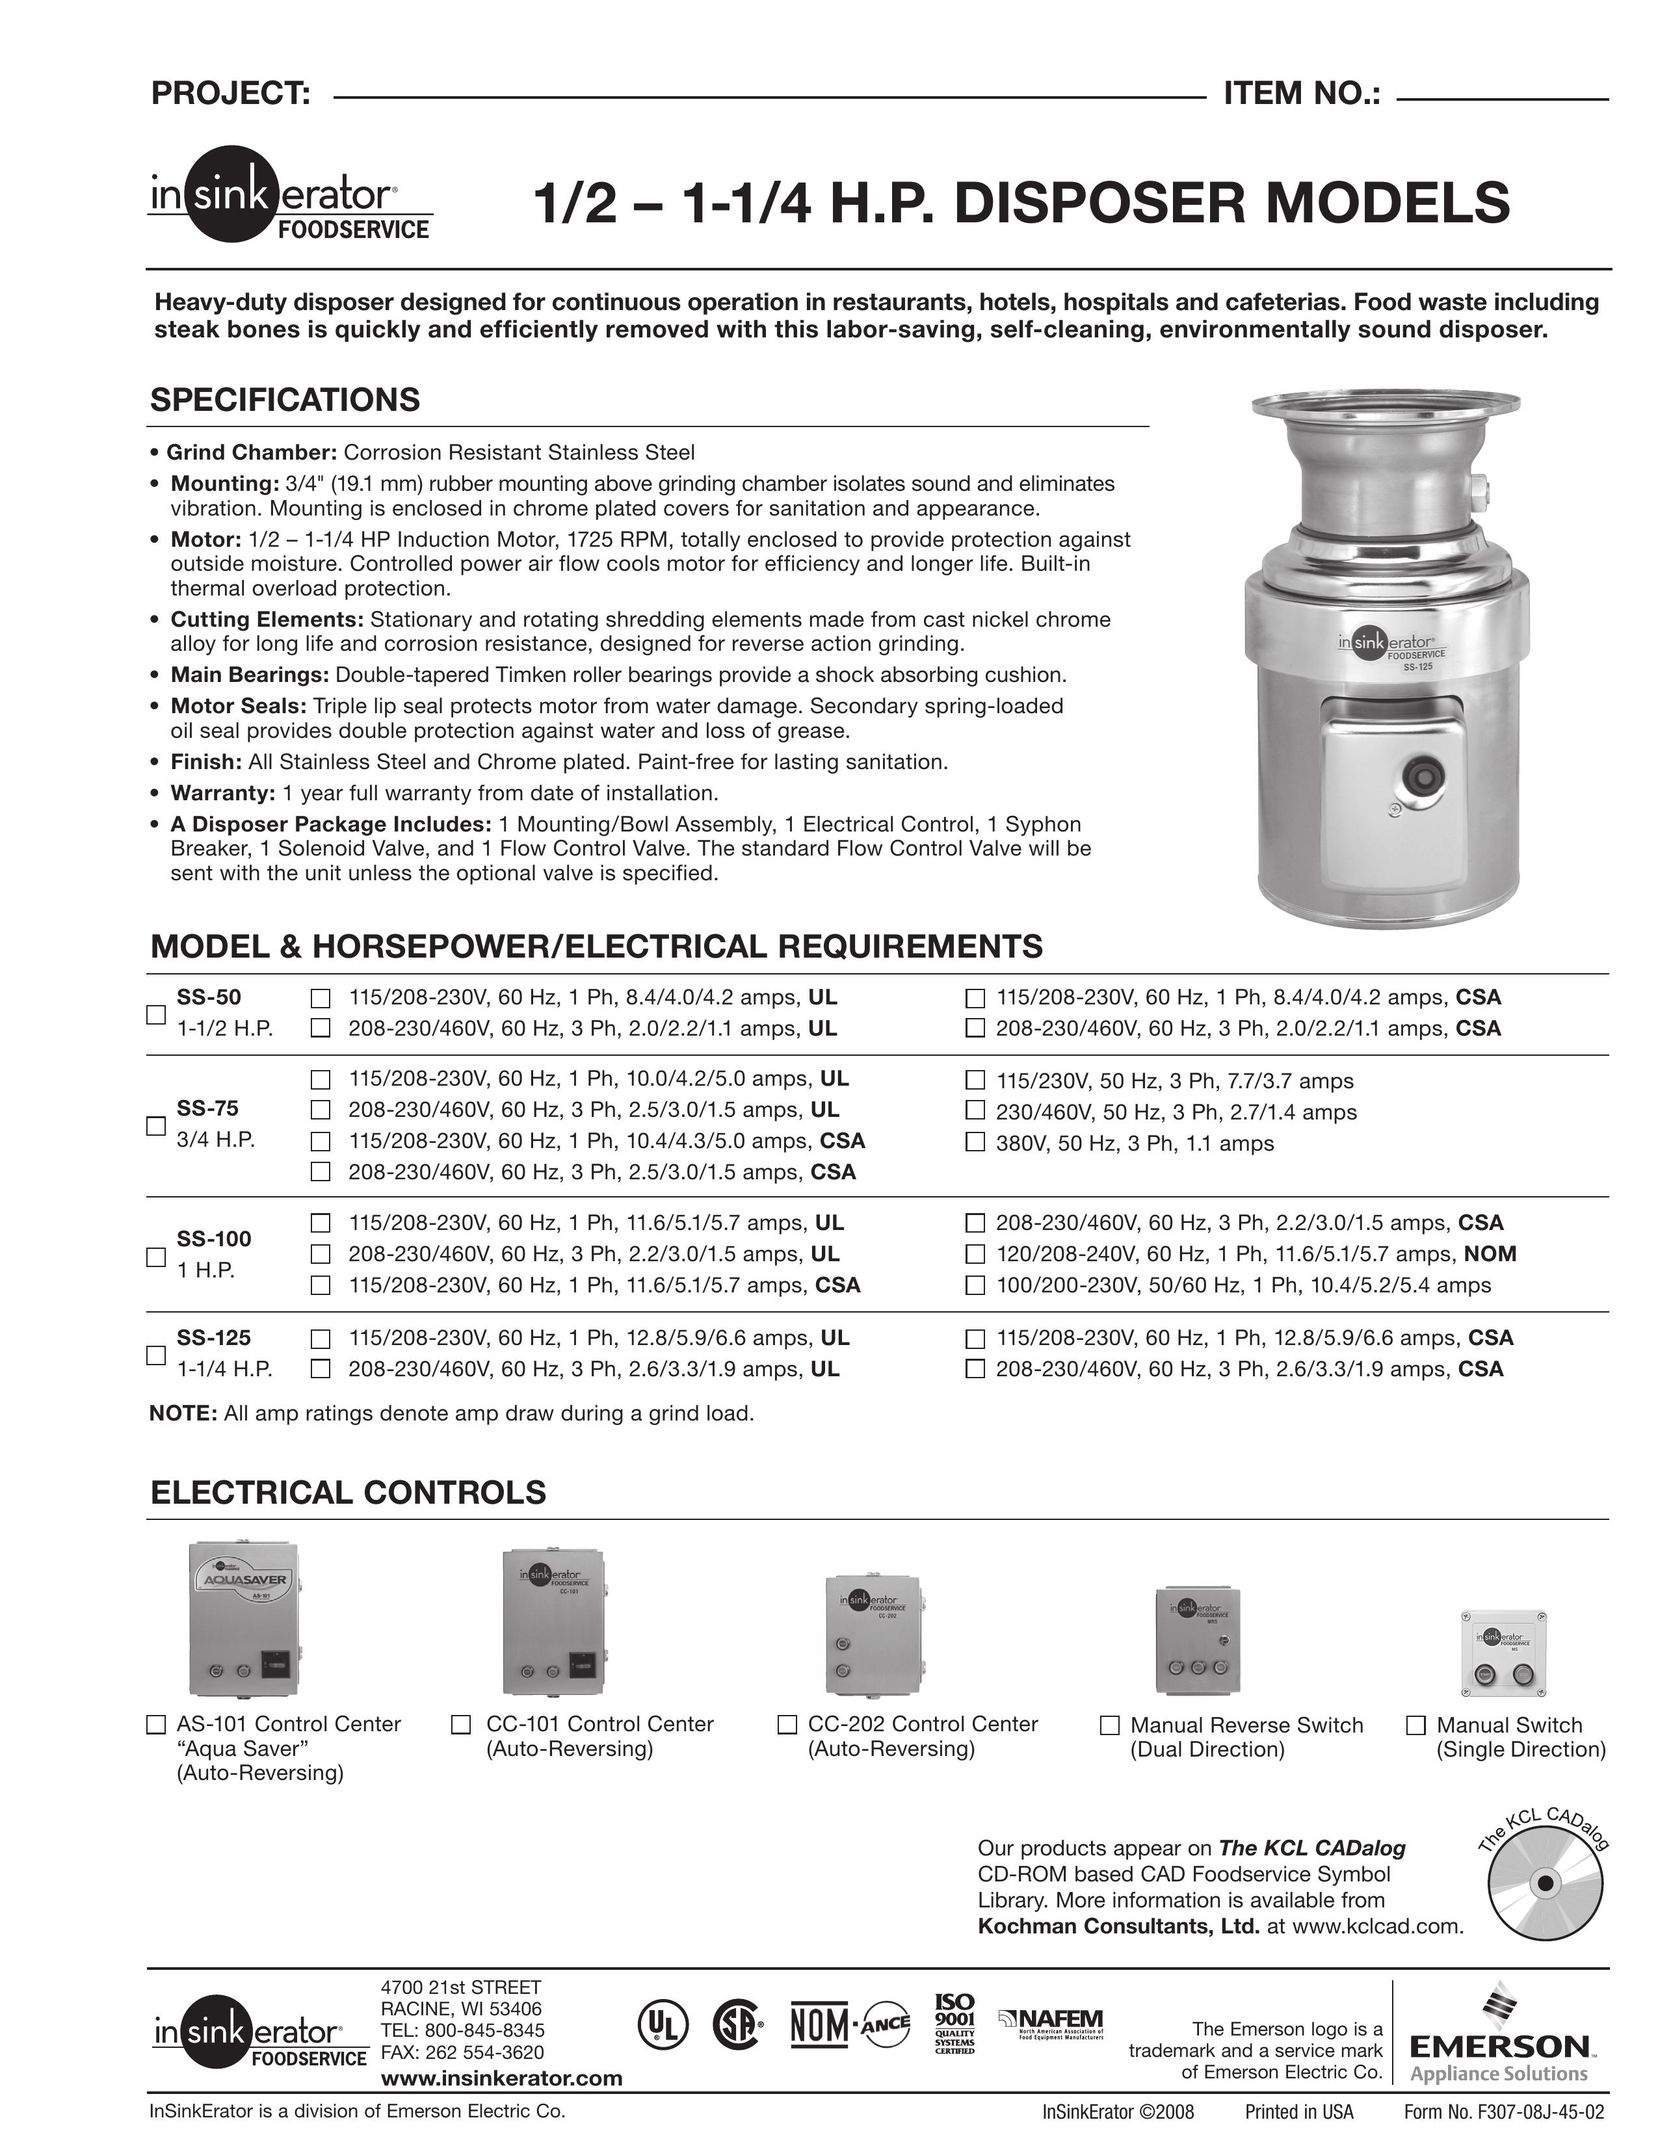 InSinkErator 1/21-1/4H.P Garbage Disposal User Manual